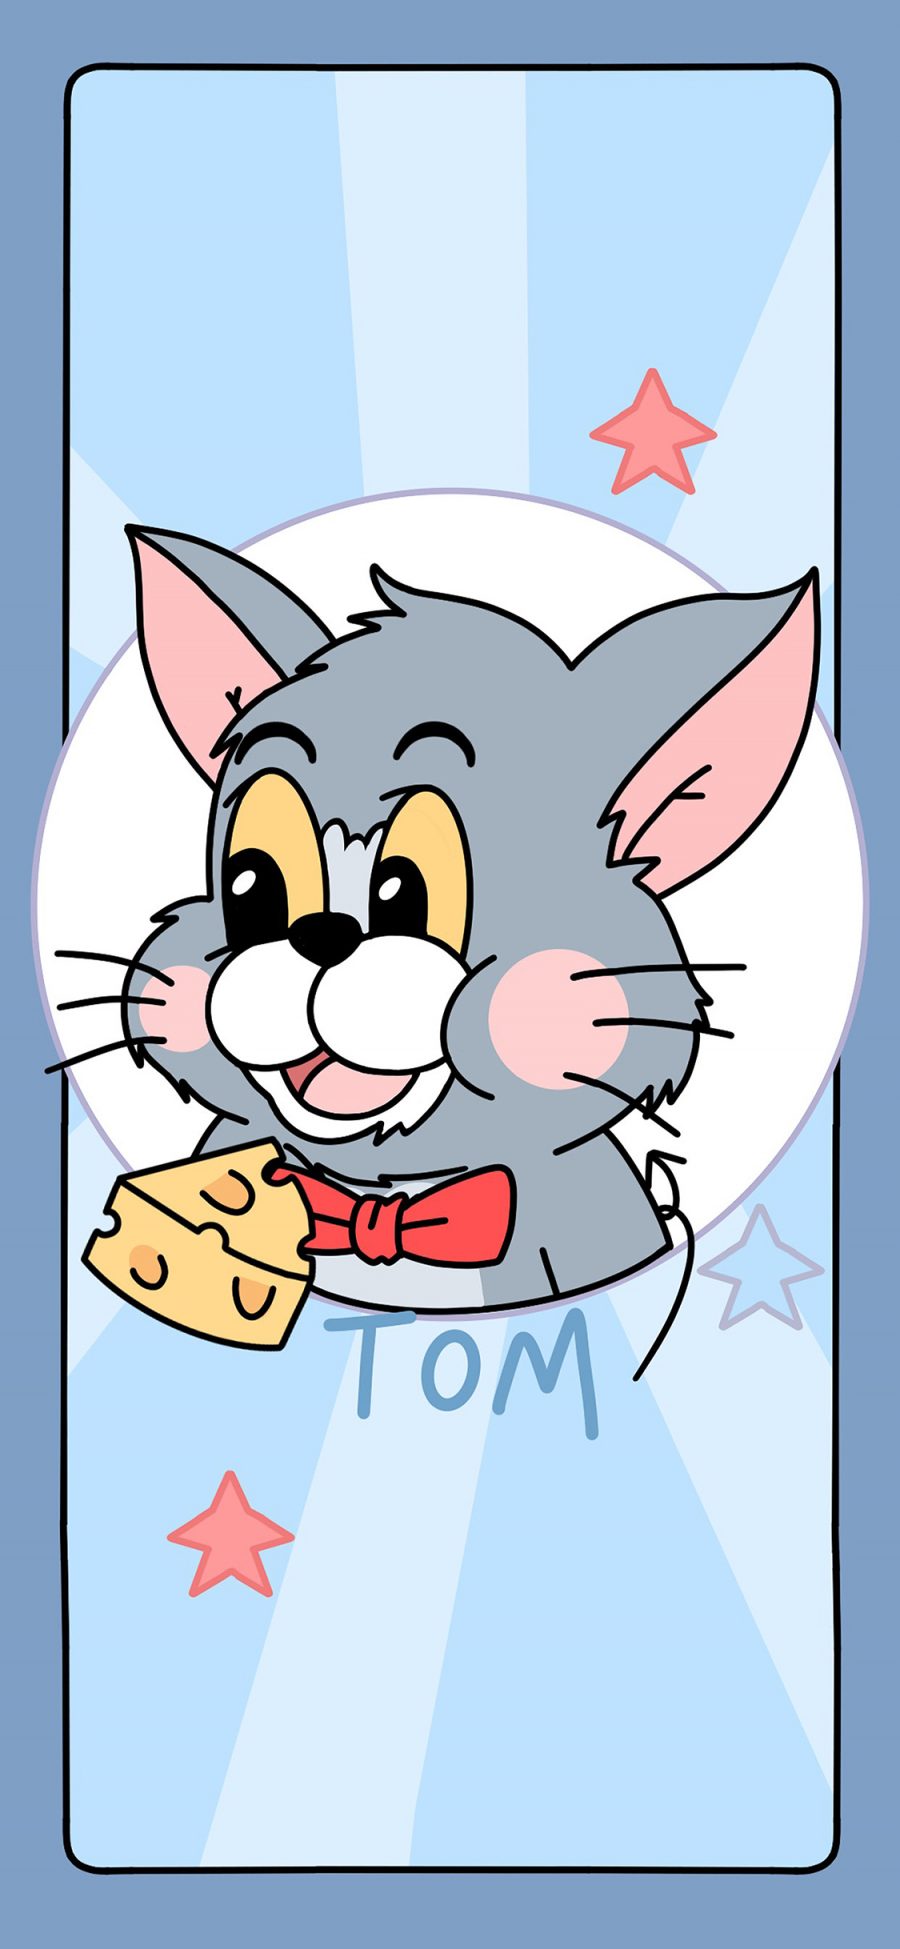 [2436×1125]汤姆 猫和老鼠 汤姆 ton 蓝 苹果手机动漫壁纸图片